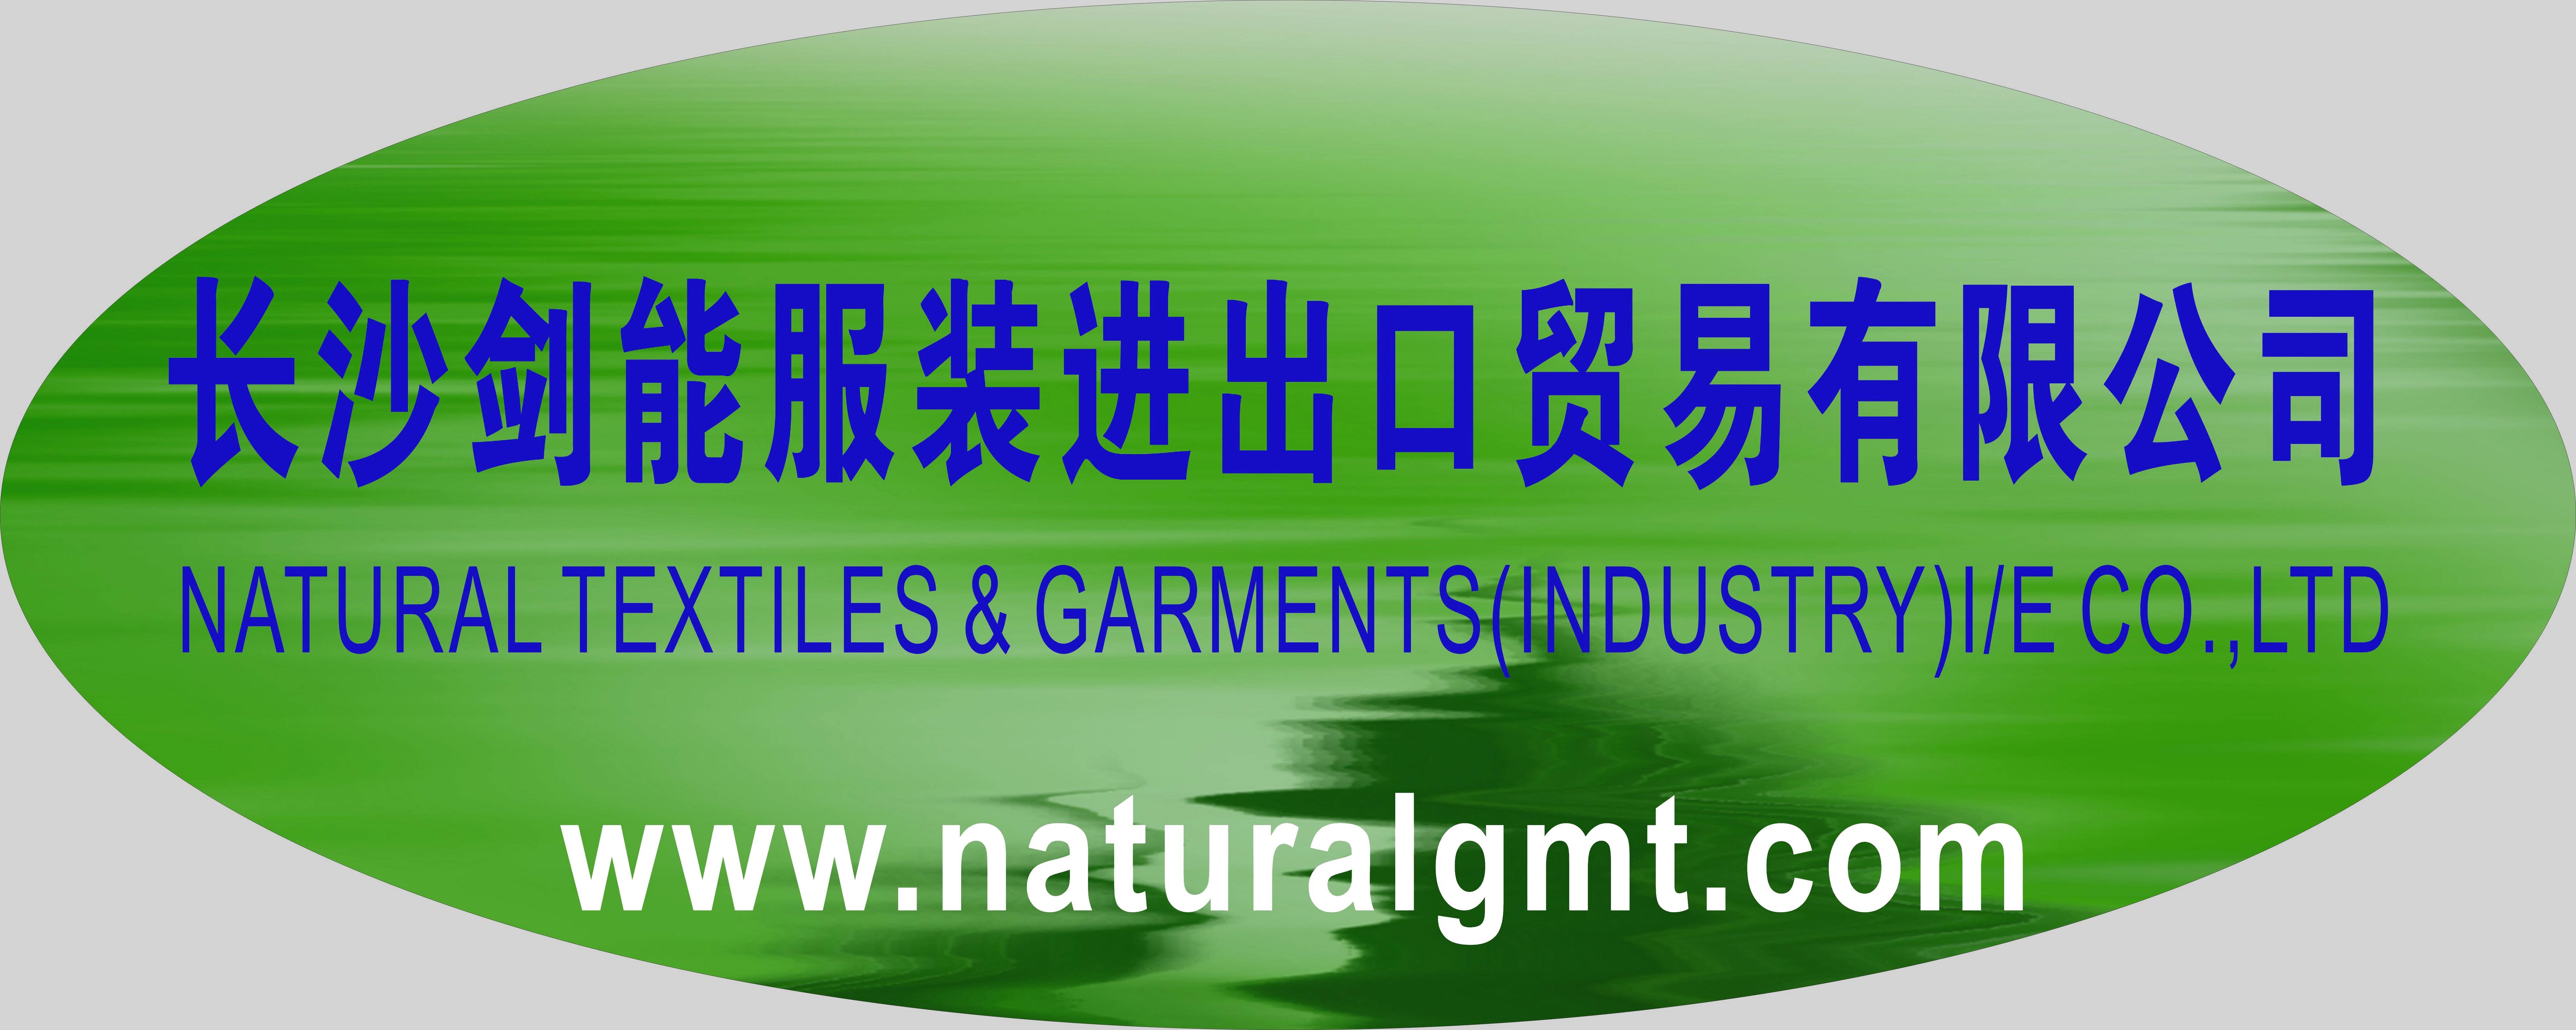 Natural Textiles & Garments (industry)I/E Co.,LTD